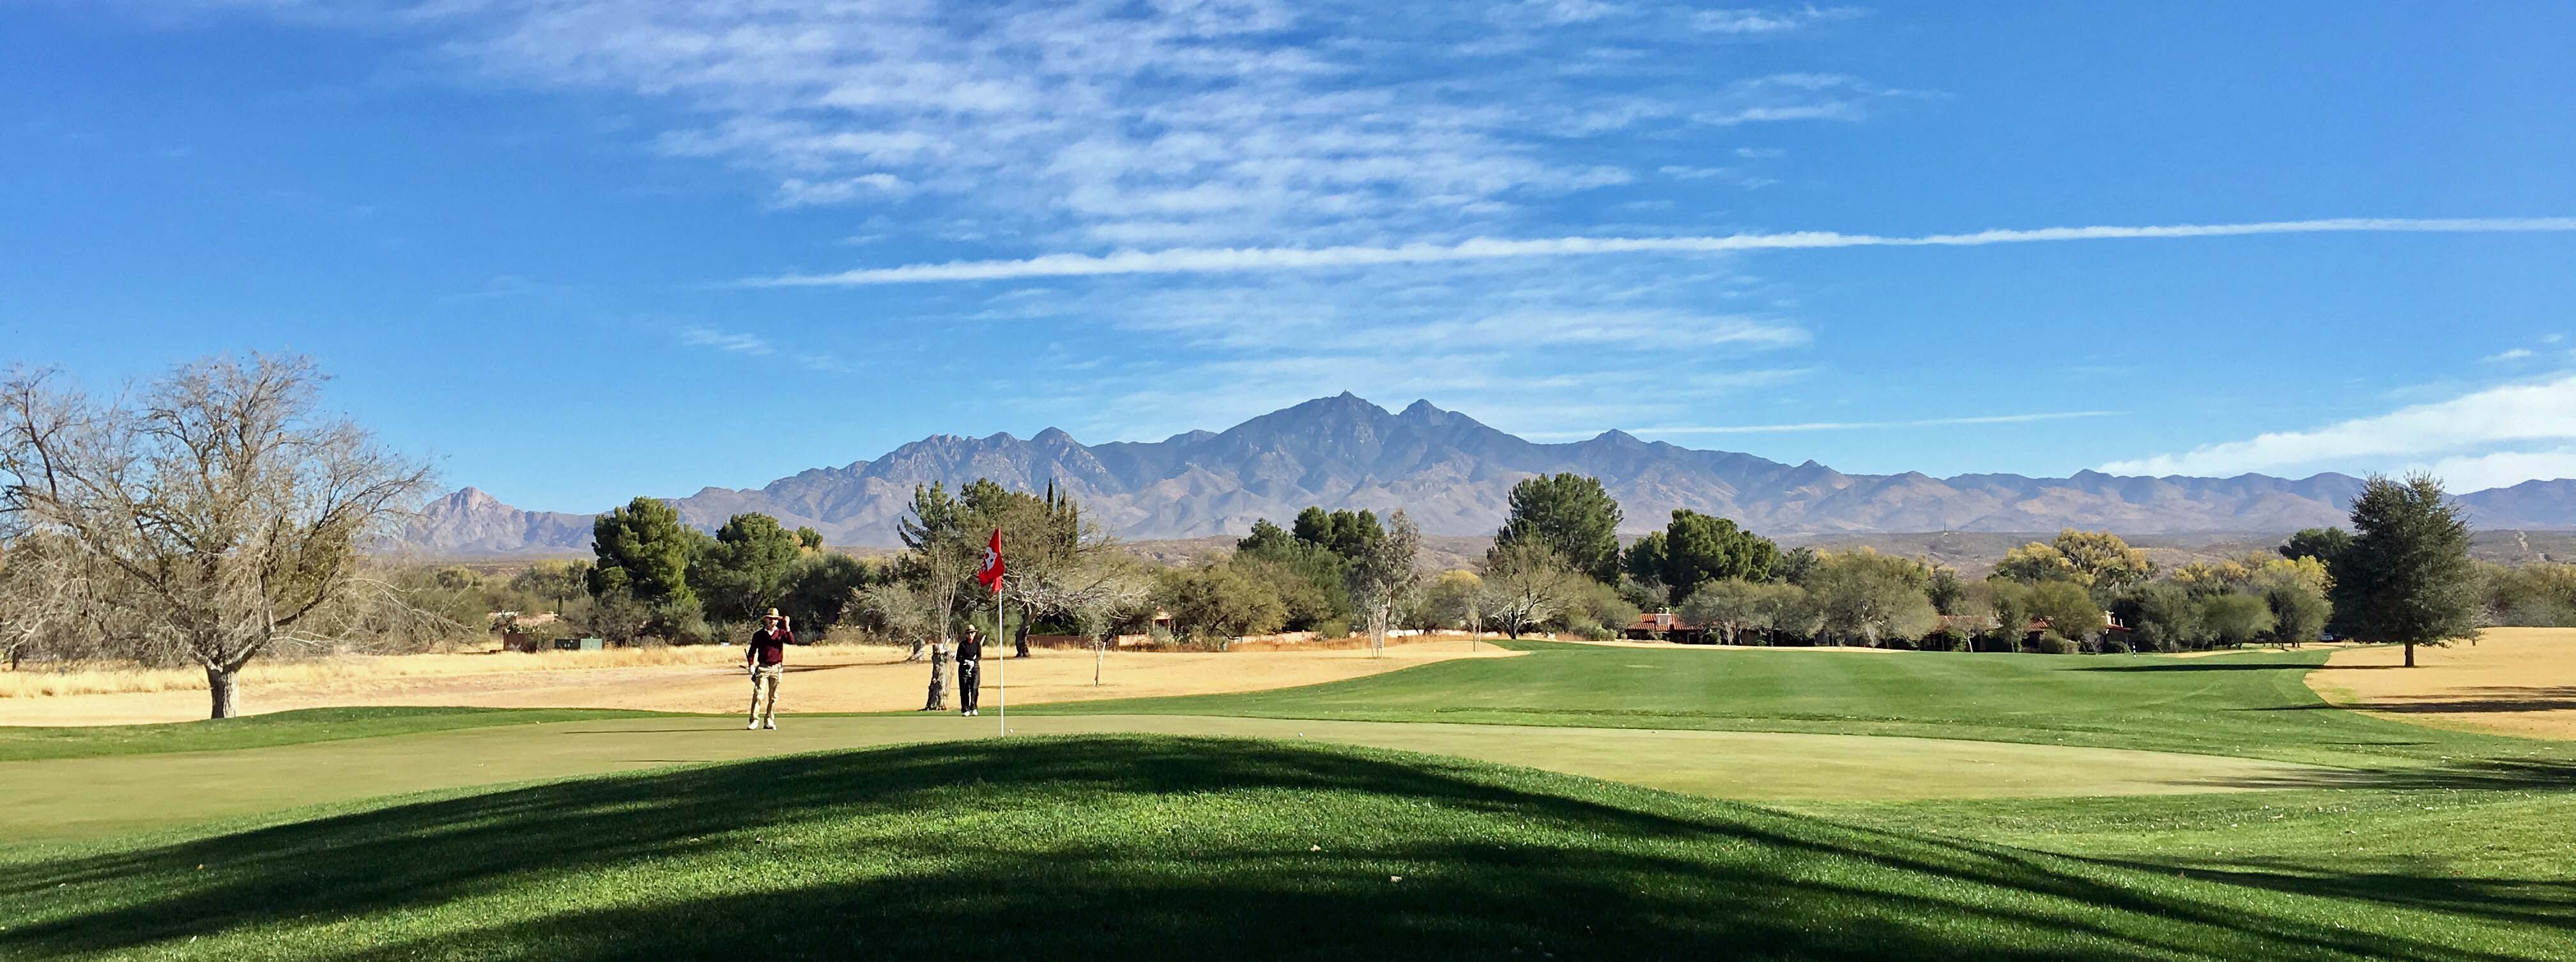 Southern Arizona Golf